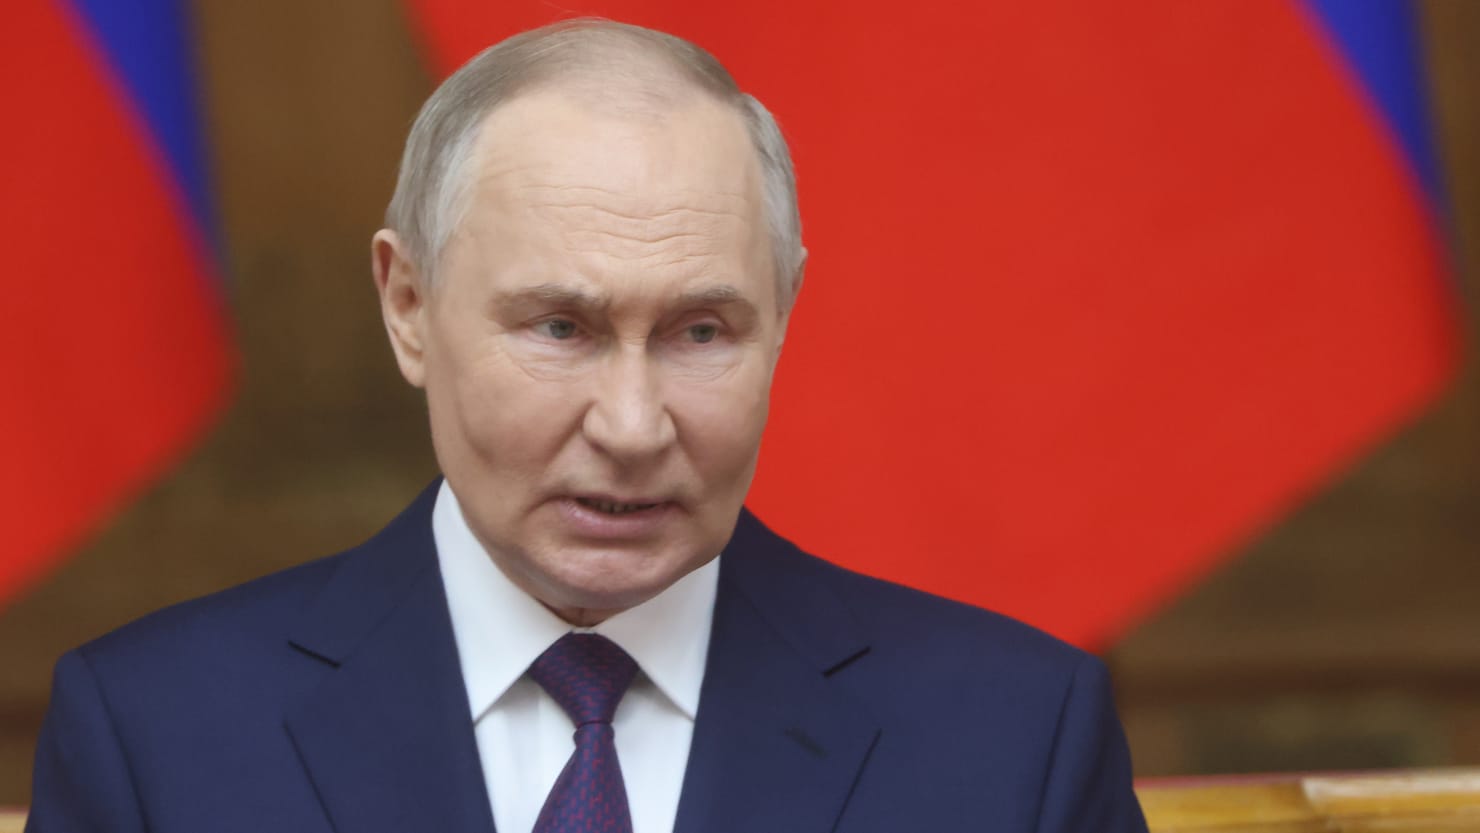 Relatório de disputas do Kremlin Vladimir Putin não ordenou o assassinato de Alexei Navalny